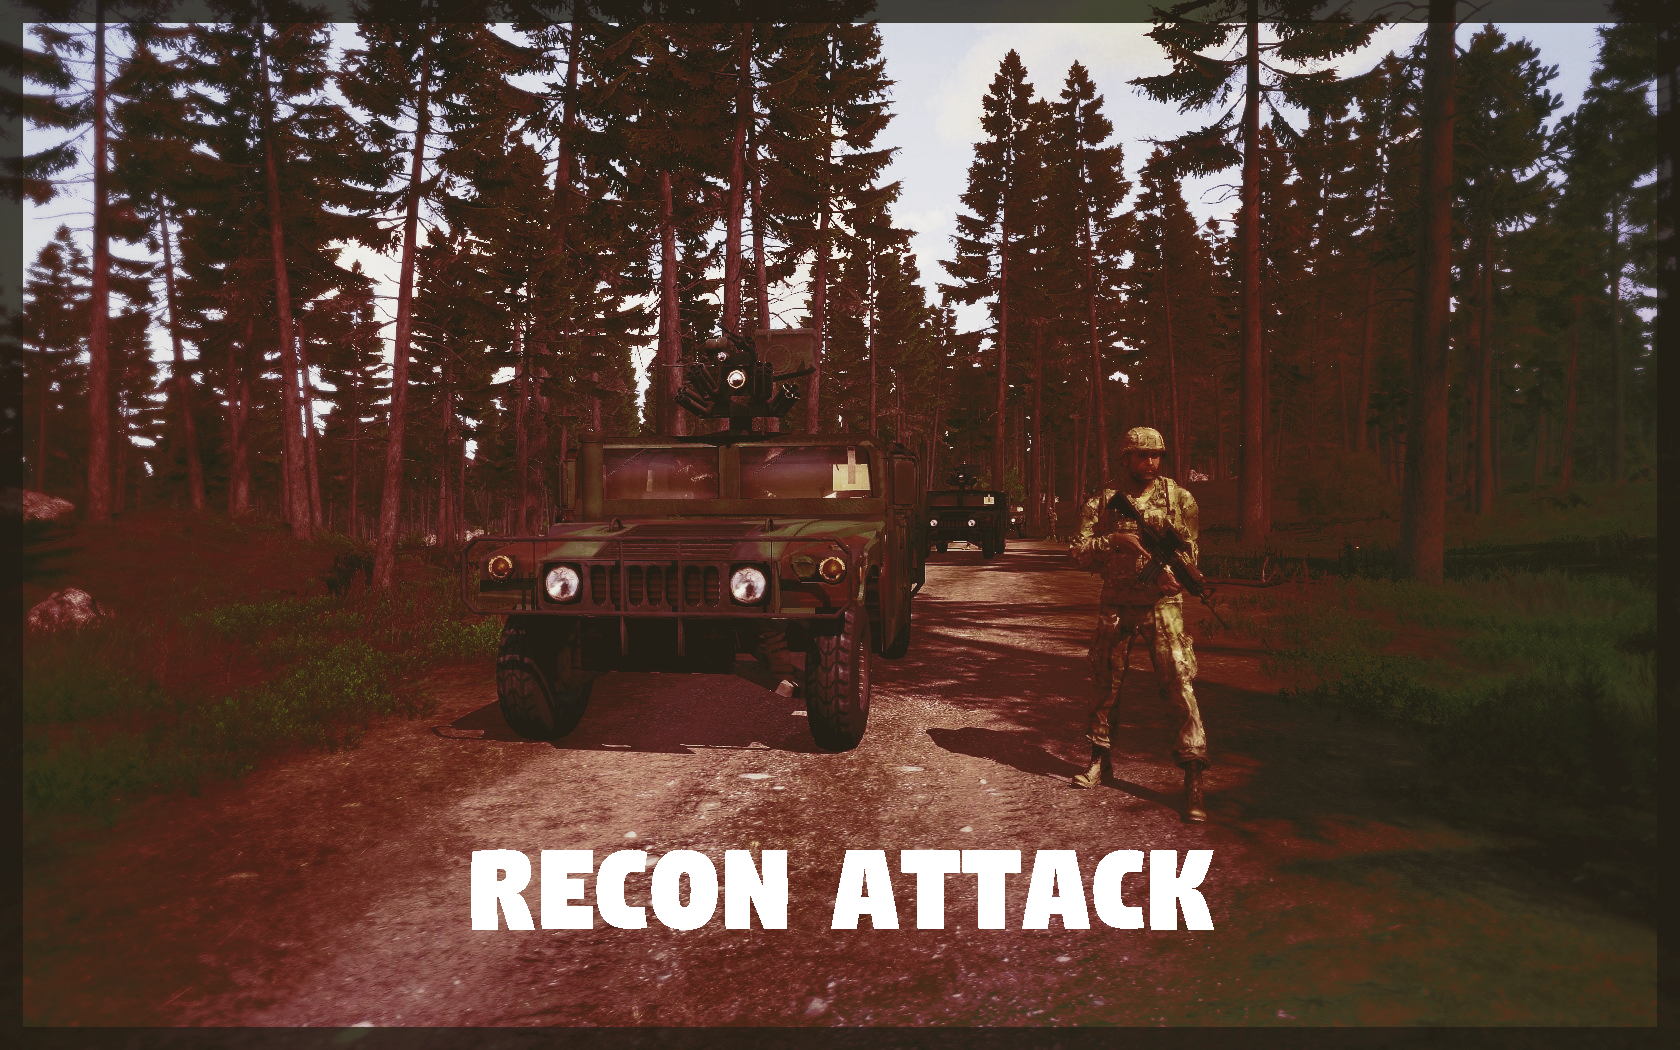 CO 6 "Recon Attack"